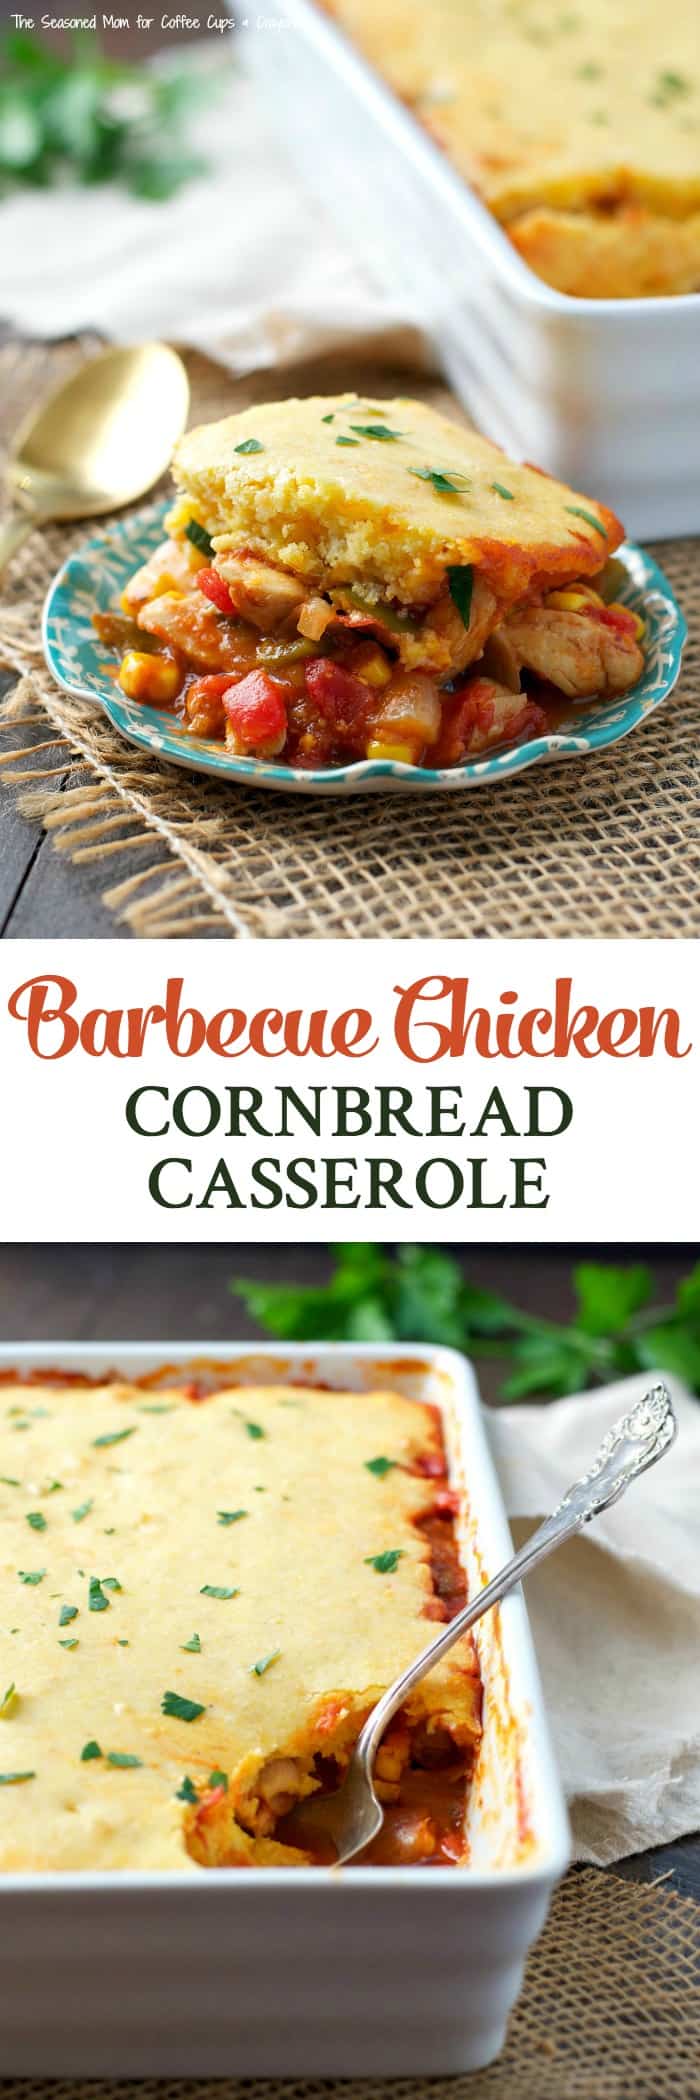 Barbecue Chicken Cornbread Casserole